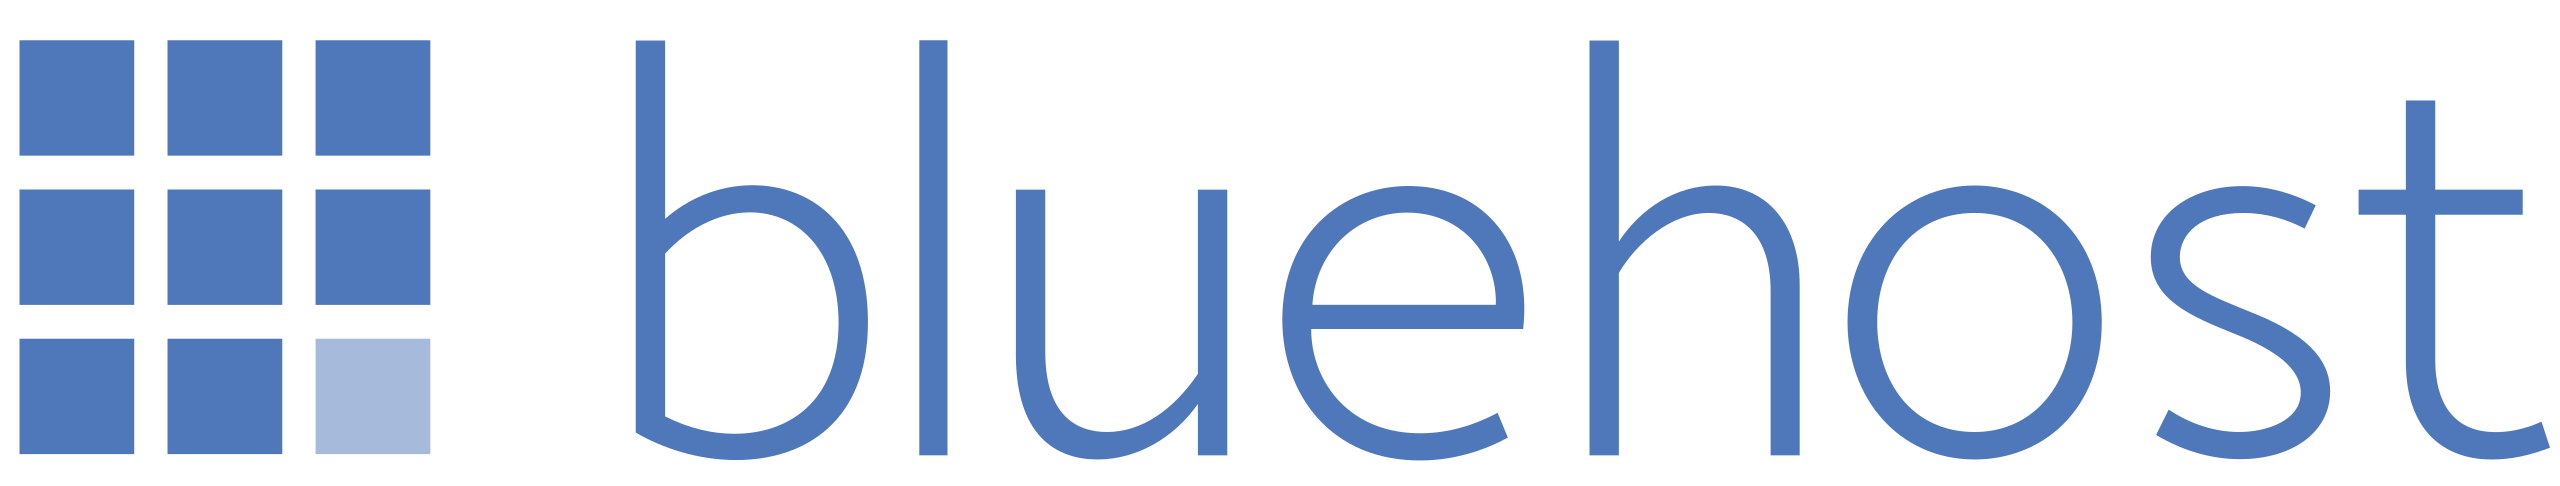 2560px-Bluehost_logo.svg